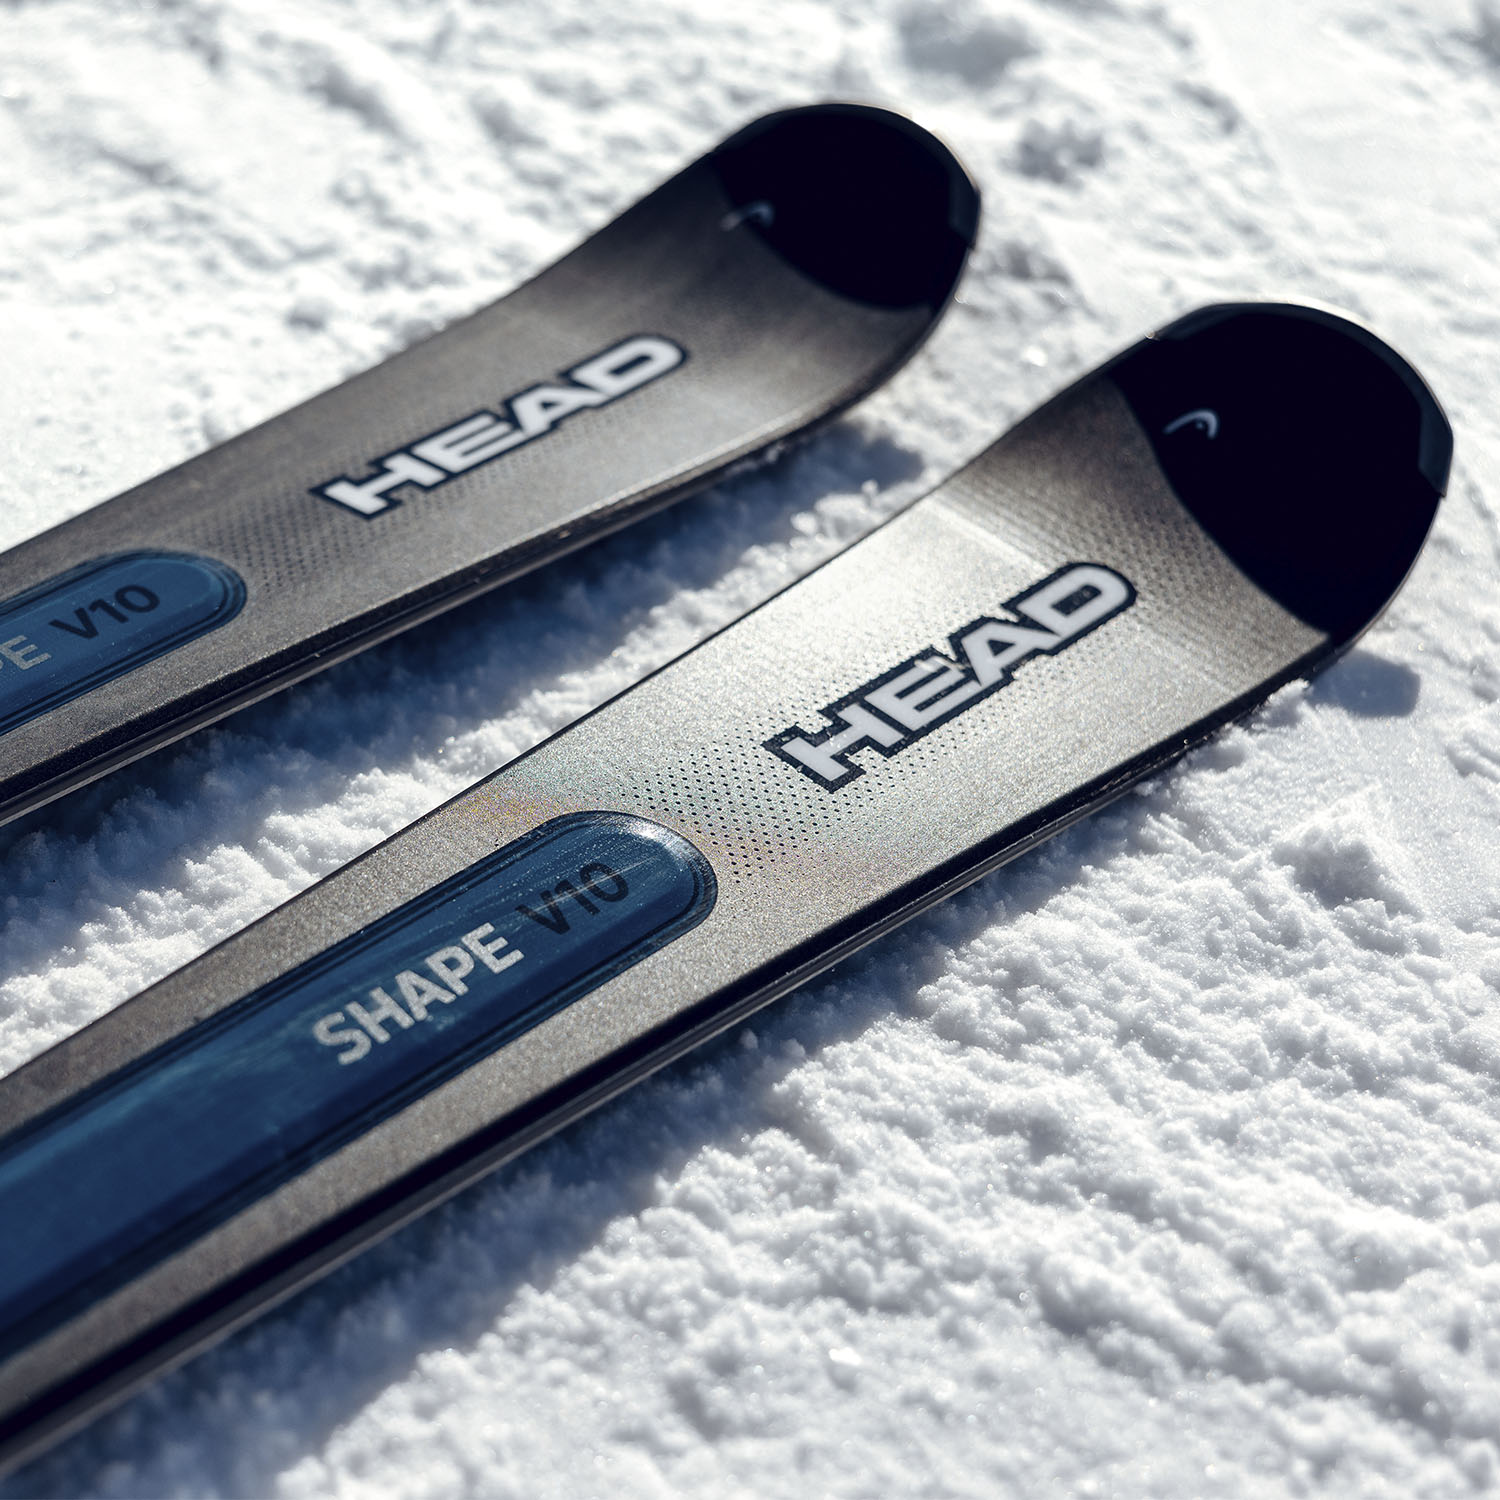 Горные лыжи с креплениями HEAD Shape e-V10 SW AMT-PR+PR 11 GW BR 90 [G] Black-blue